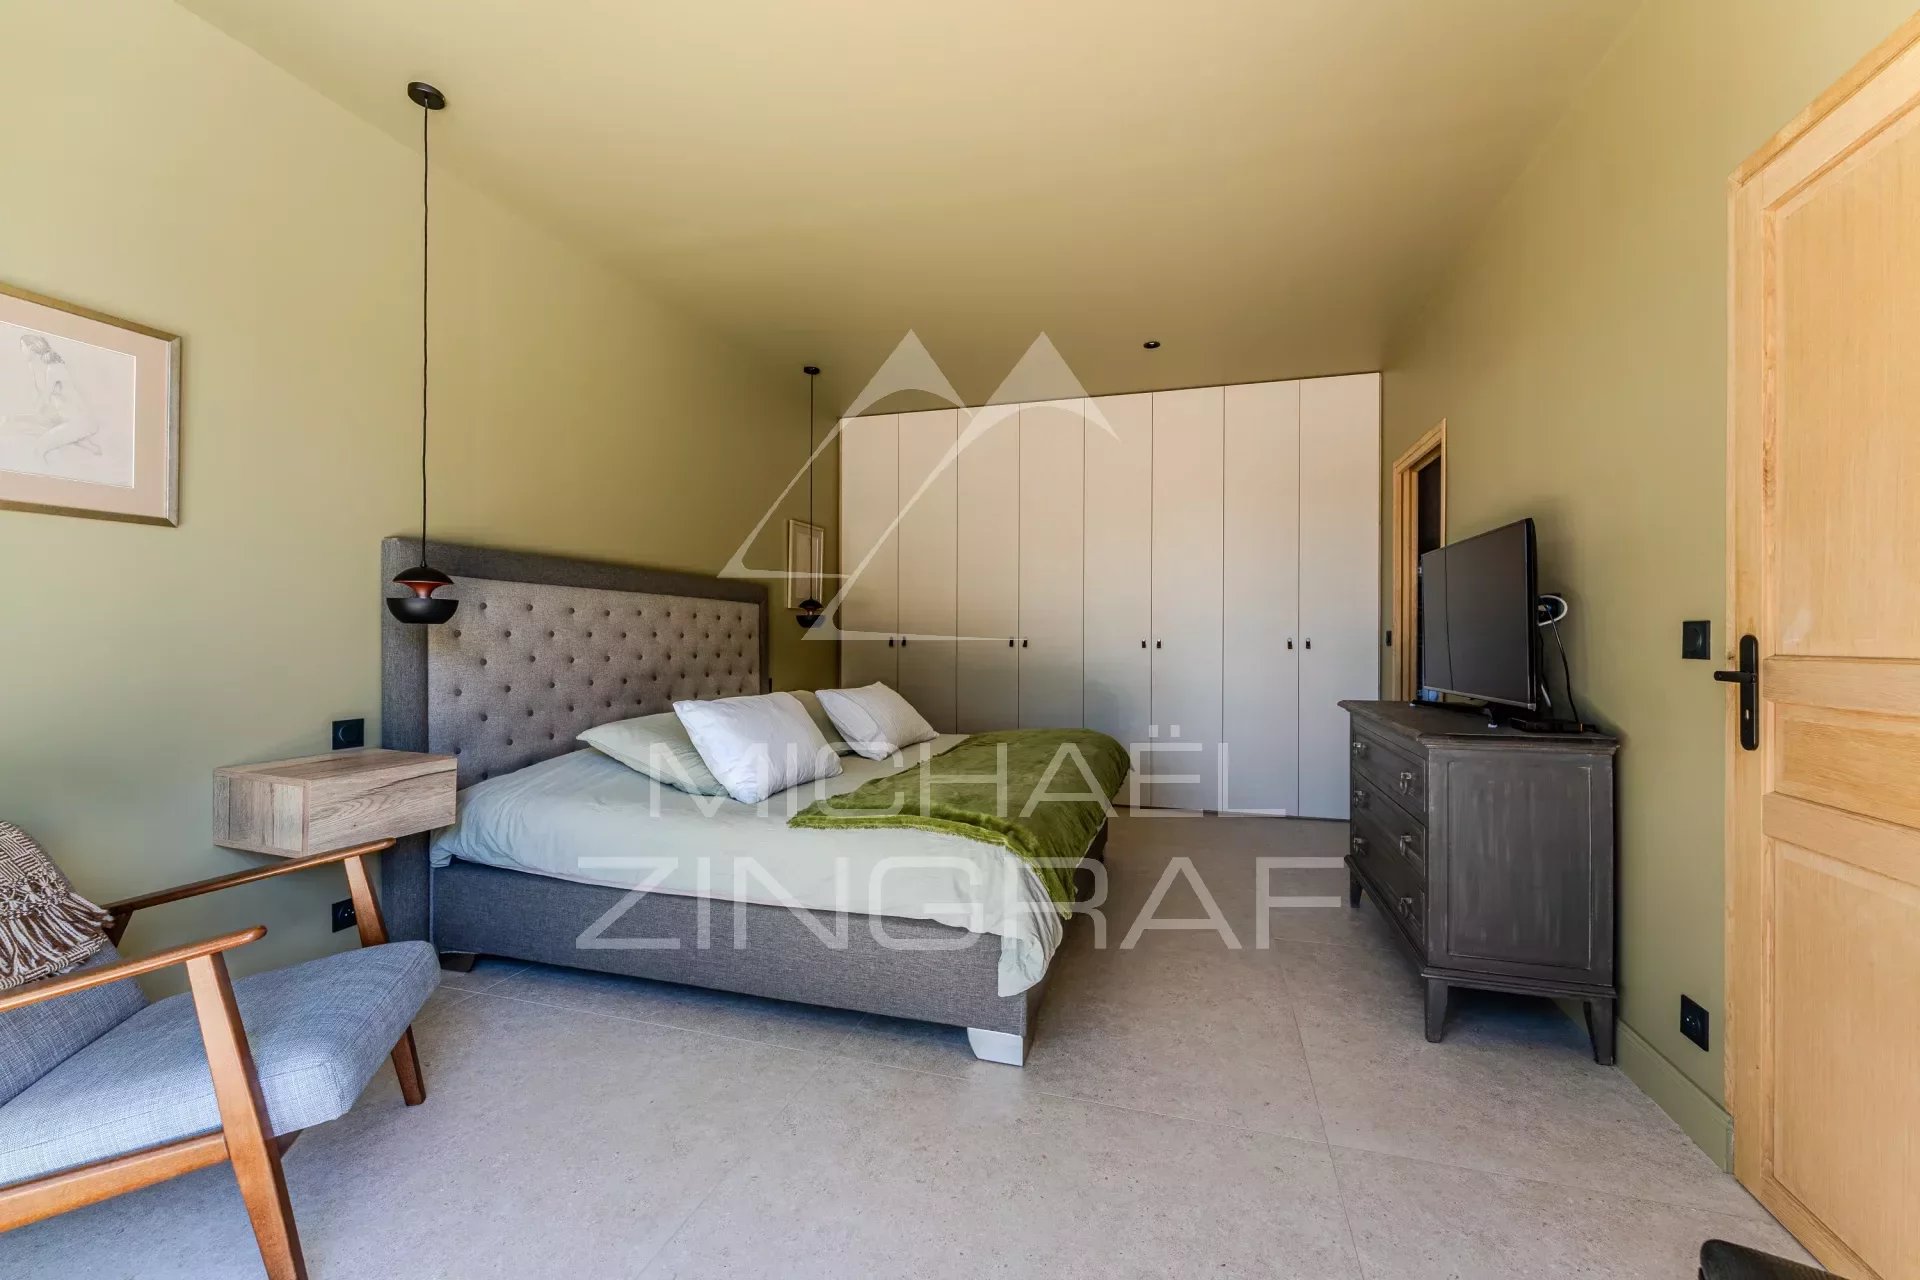 Abatilles - Villa mit 6 Schlafzimmern - Luxuriöse Leistungen